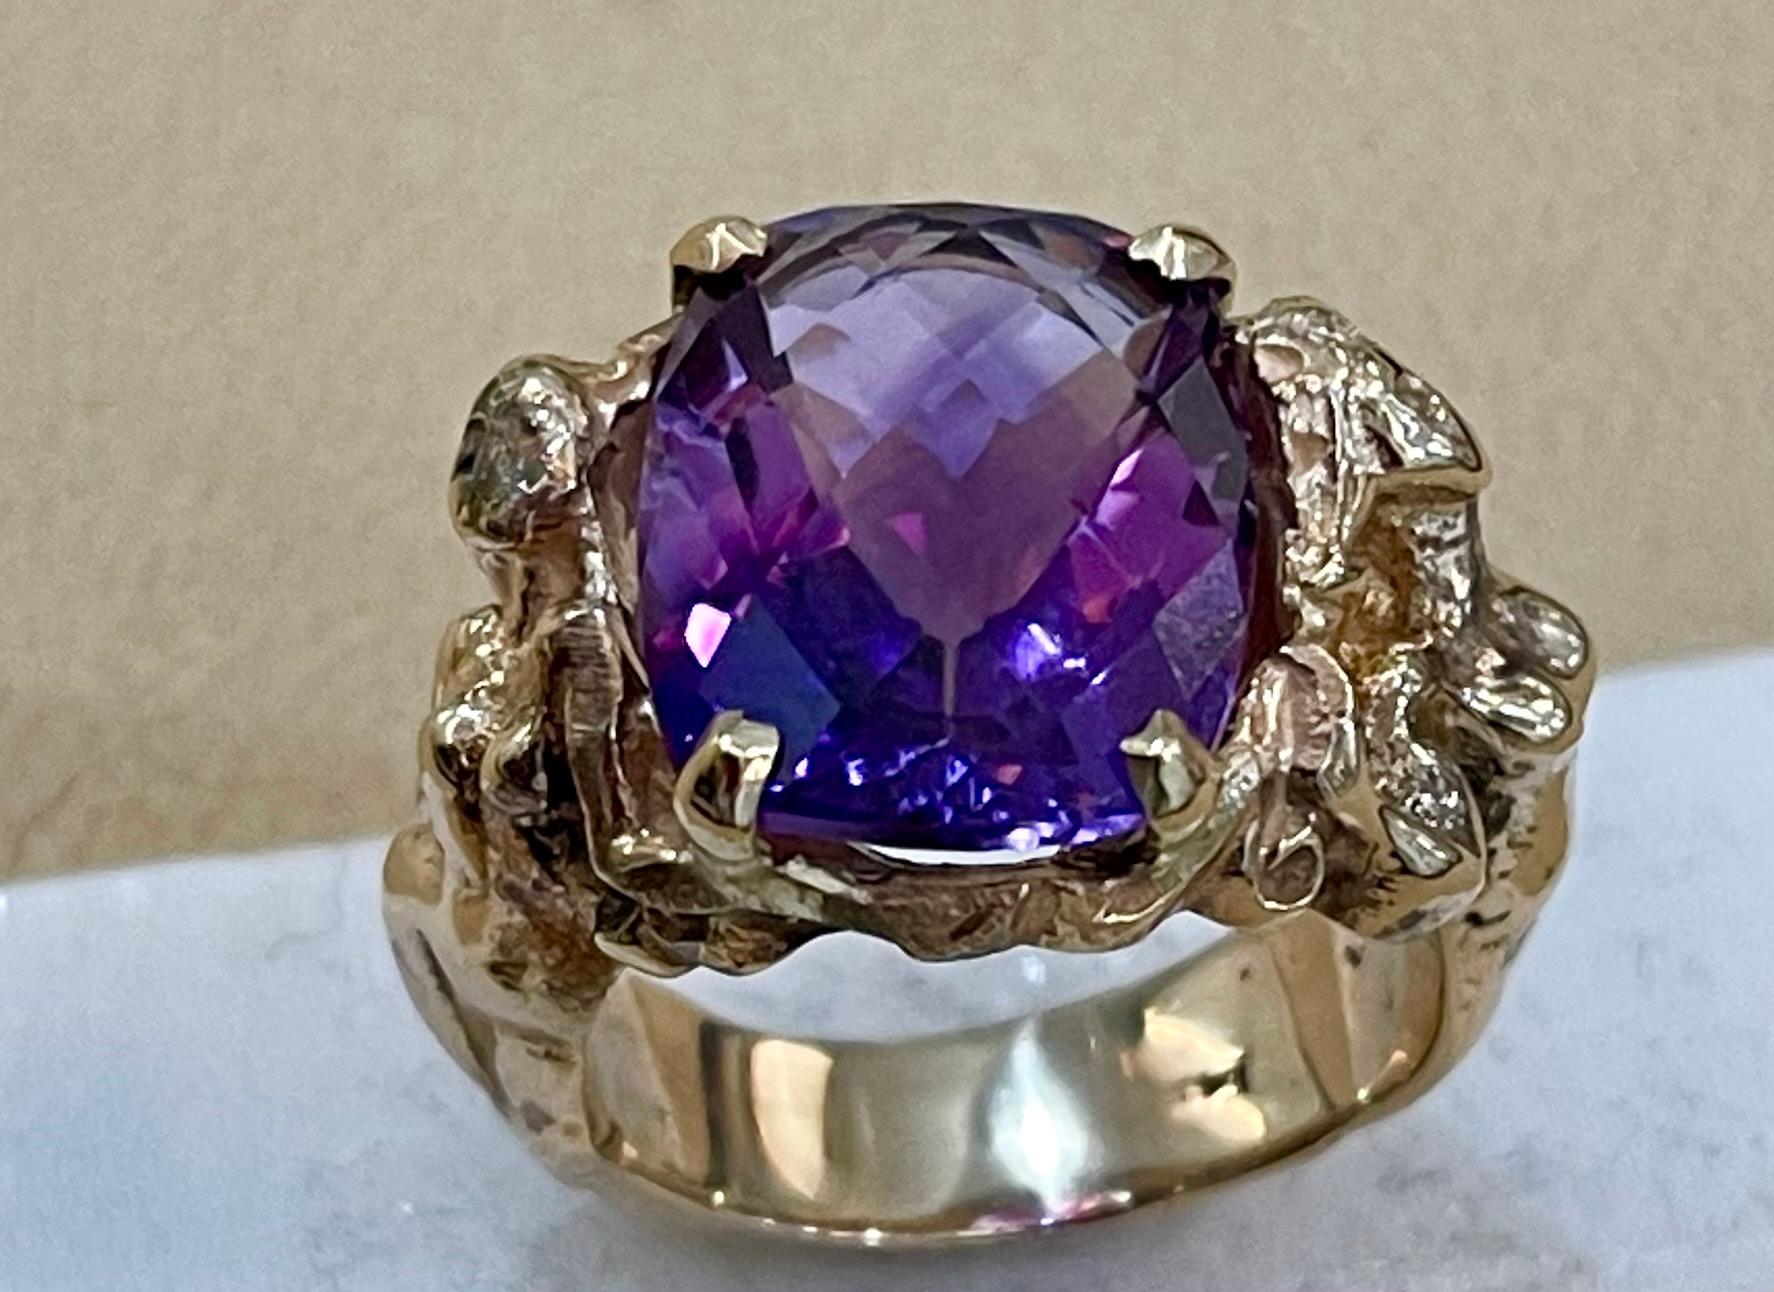 5 carat amethyst ring